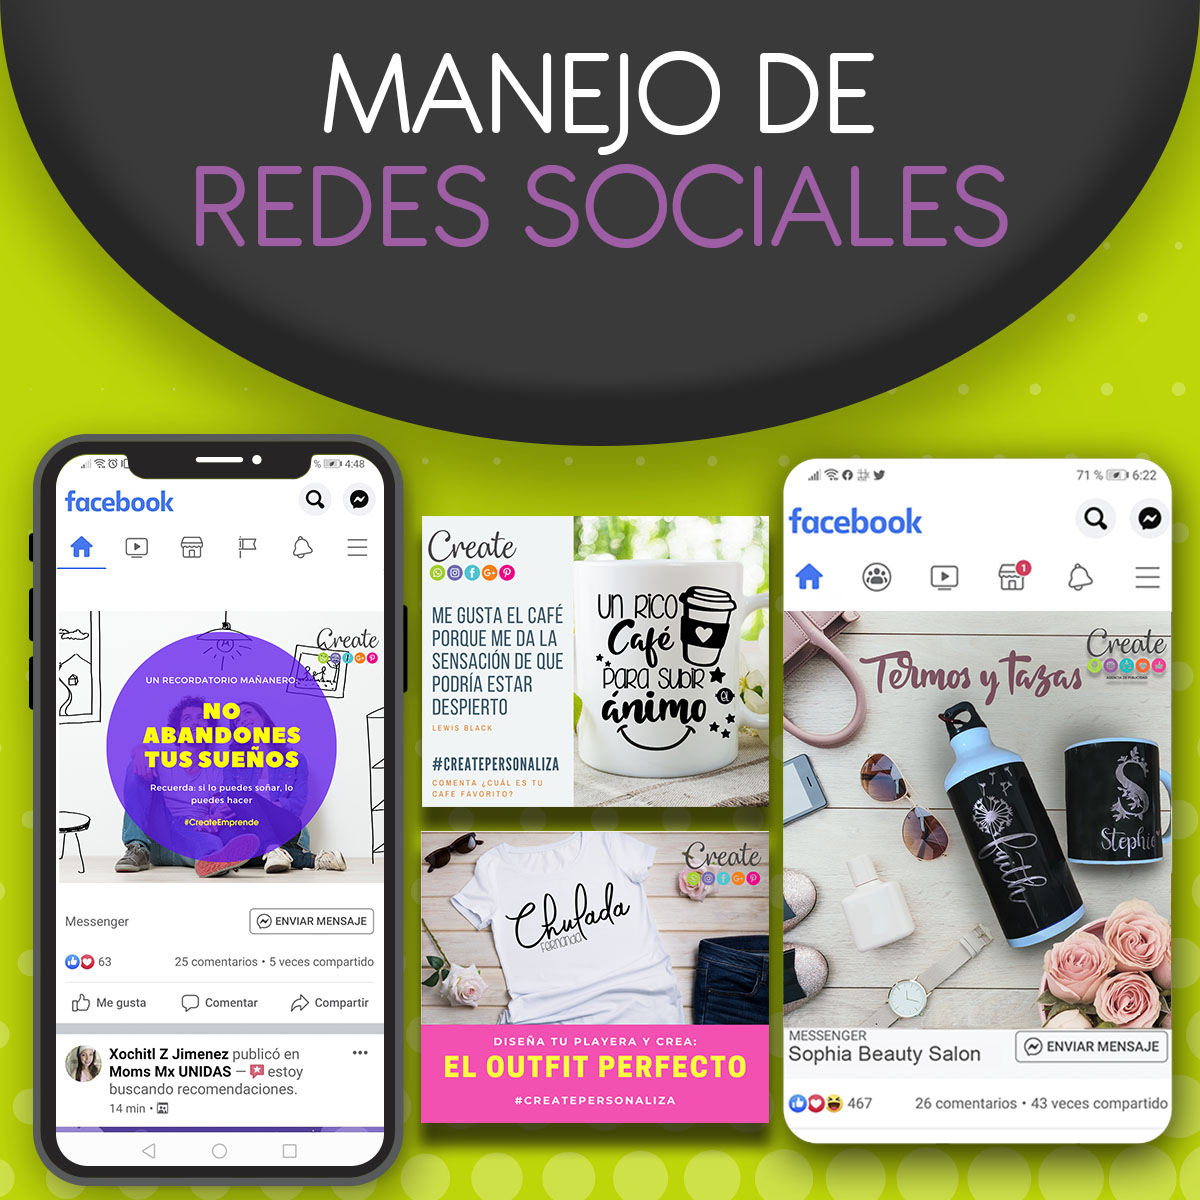 BANNER MANEJO DE REDES SOCIALES